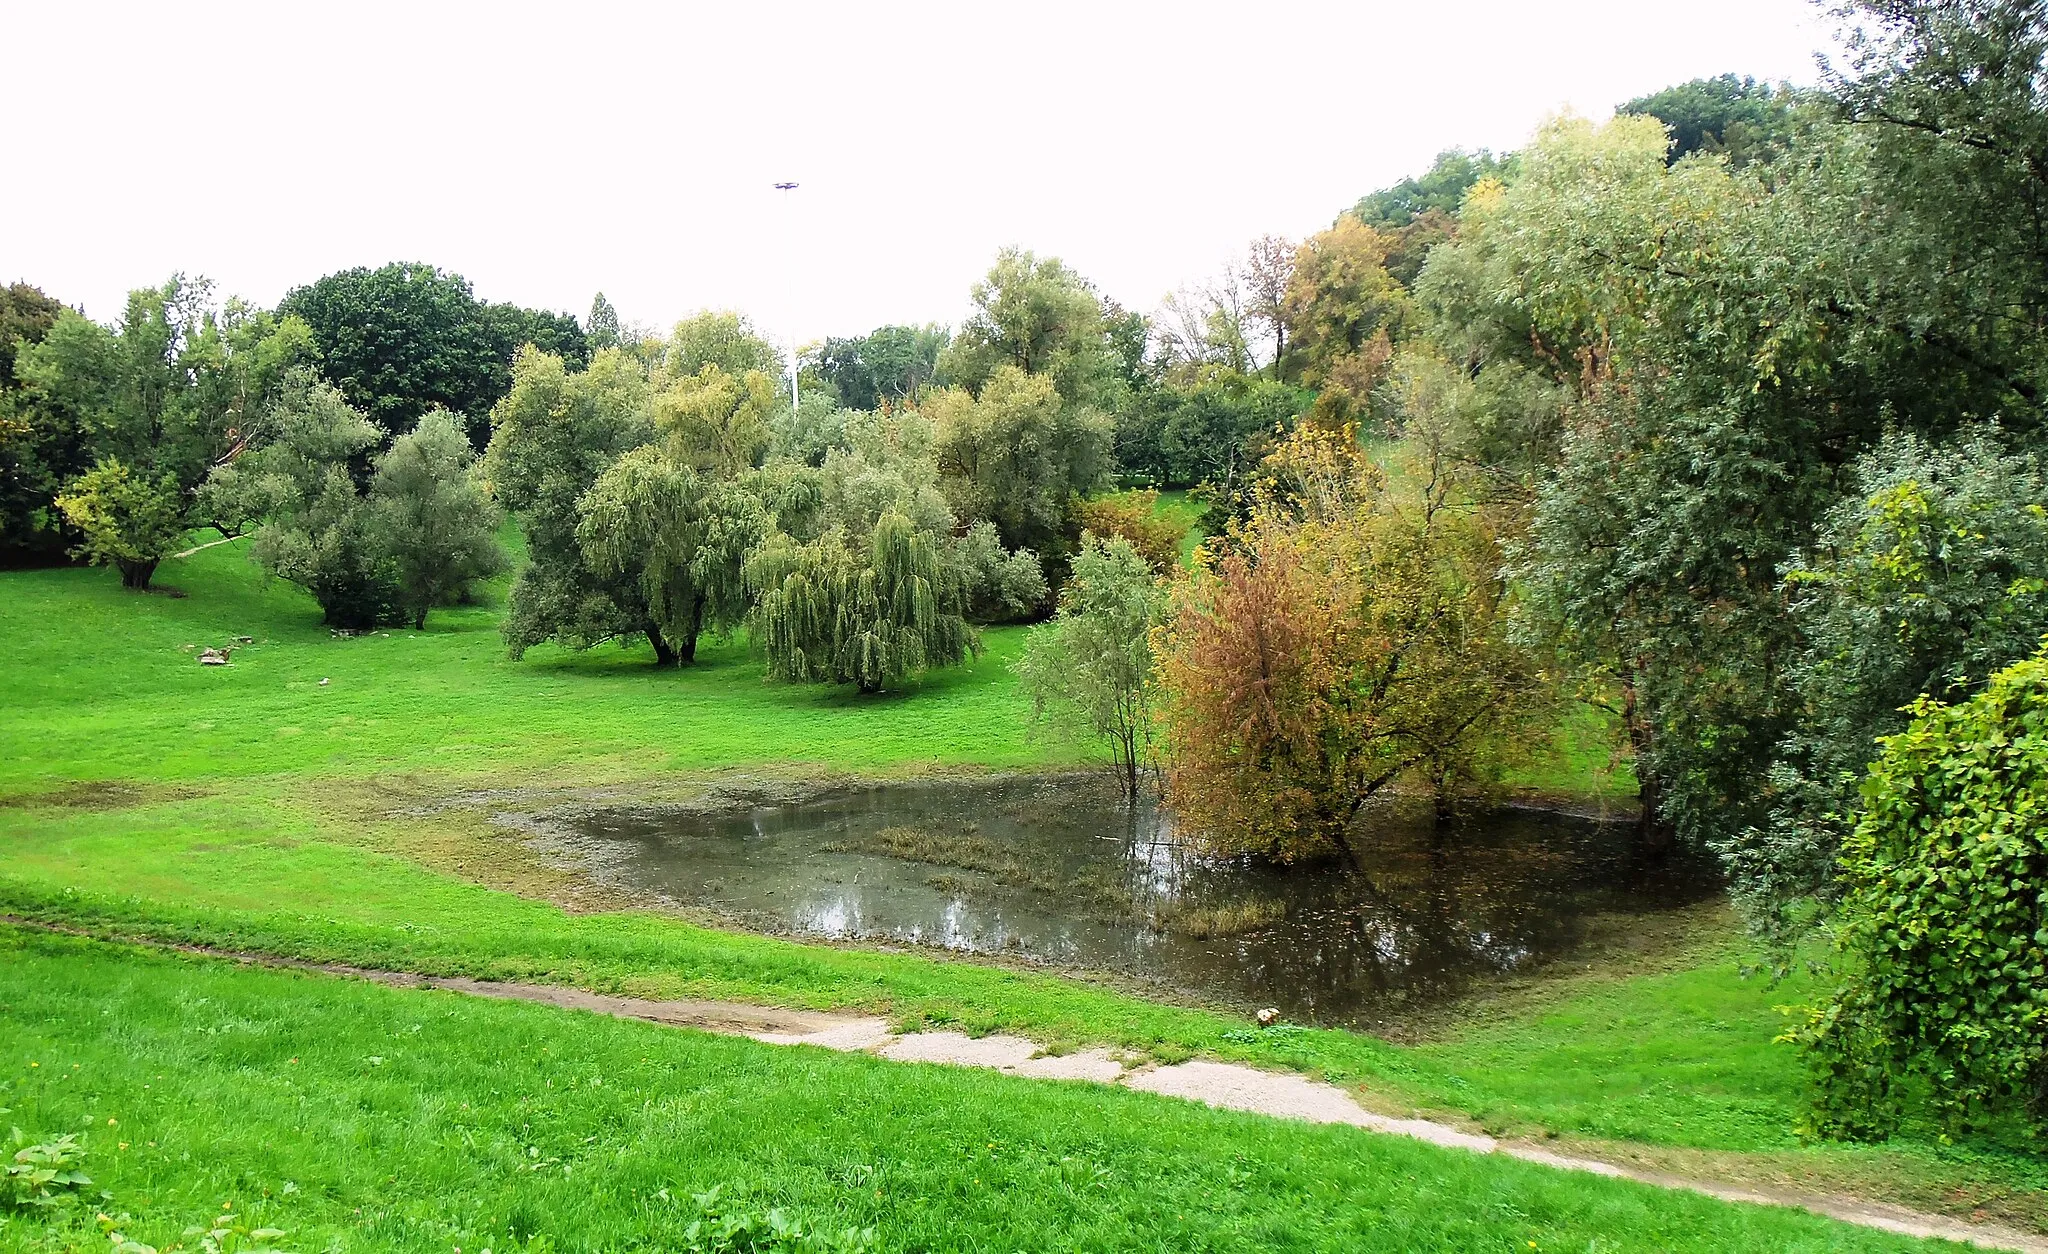 Photo showing: Milano, parco Lambro, un avvallamento che un tempo ospitava un laghetto, dopo la pioggia. ra la vegetazione spiccano i salici